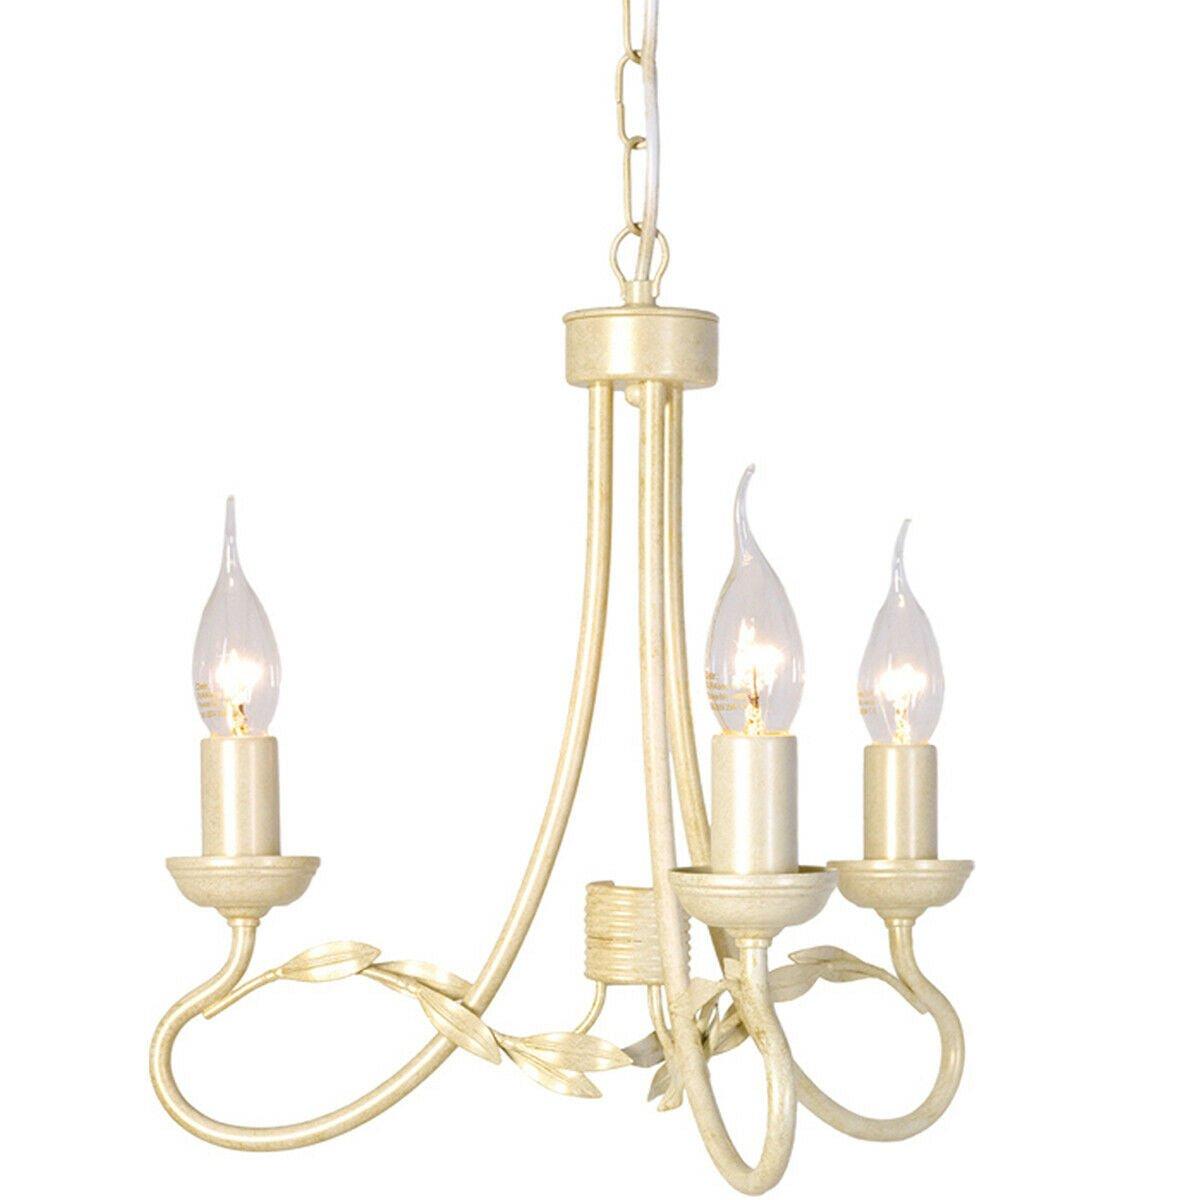 3 Bulb Chandelier Hanging Pendant LIght Ivory Gold LED E14 60W Bulb